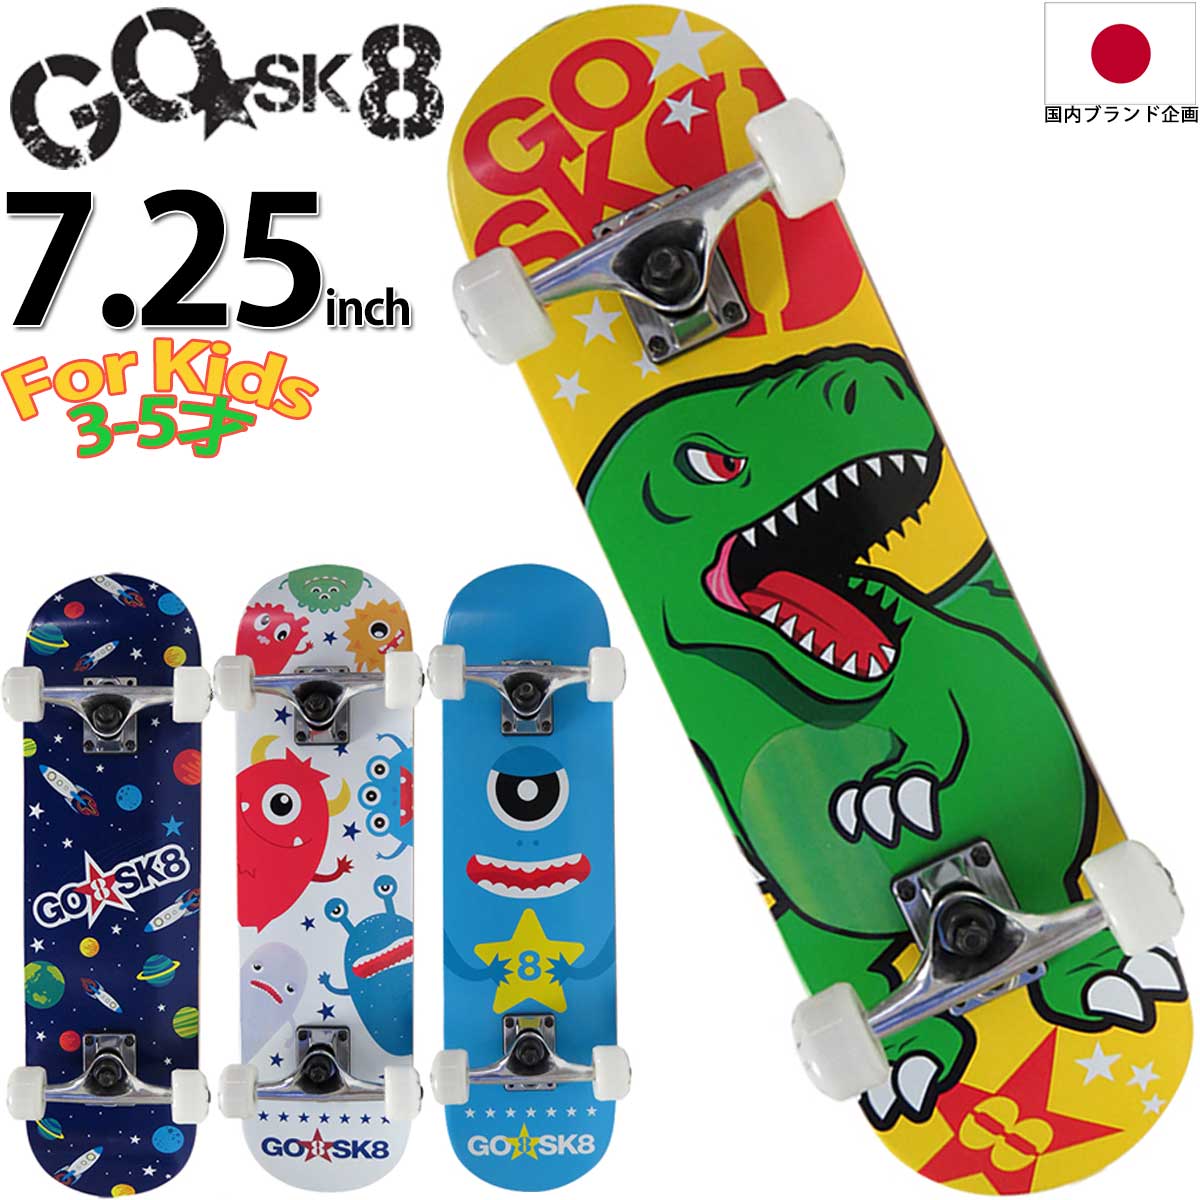  GOSK8 7.25x27インチ スケボー コンプリート ゴースケート 27inch 国内企画 スケートボード 完成品 キッズ 子供 子ども こども はじめて 初心者 おすすめ 人気 ブランド GO SK8 子供用 3才 4才 5才